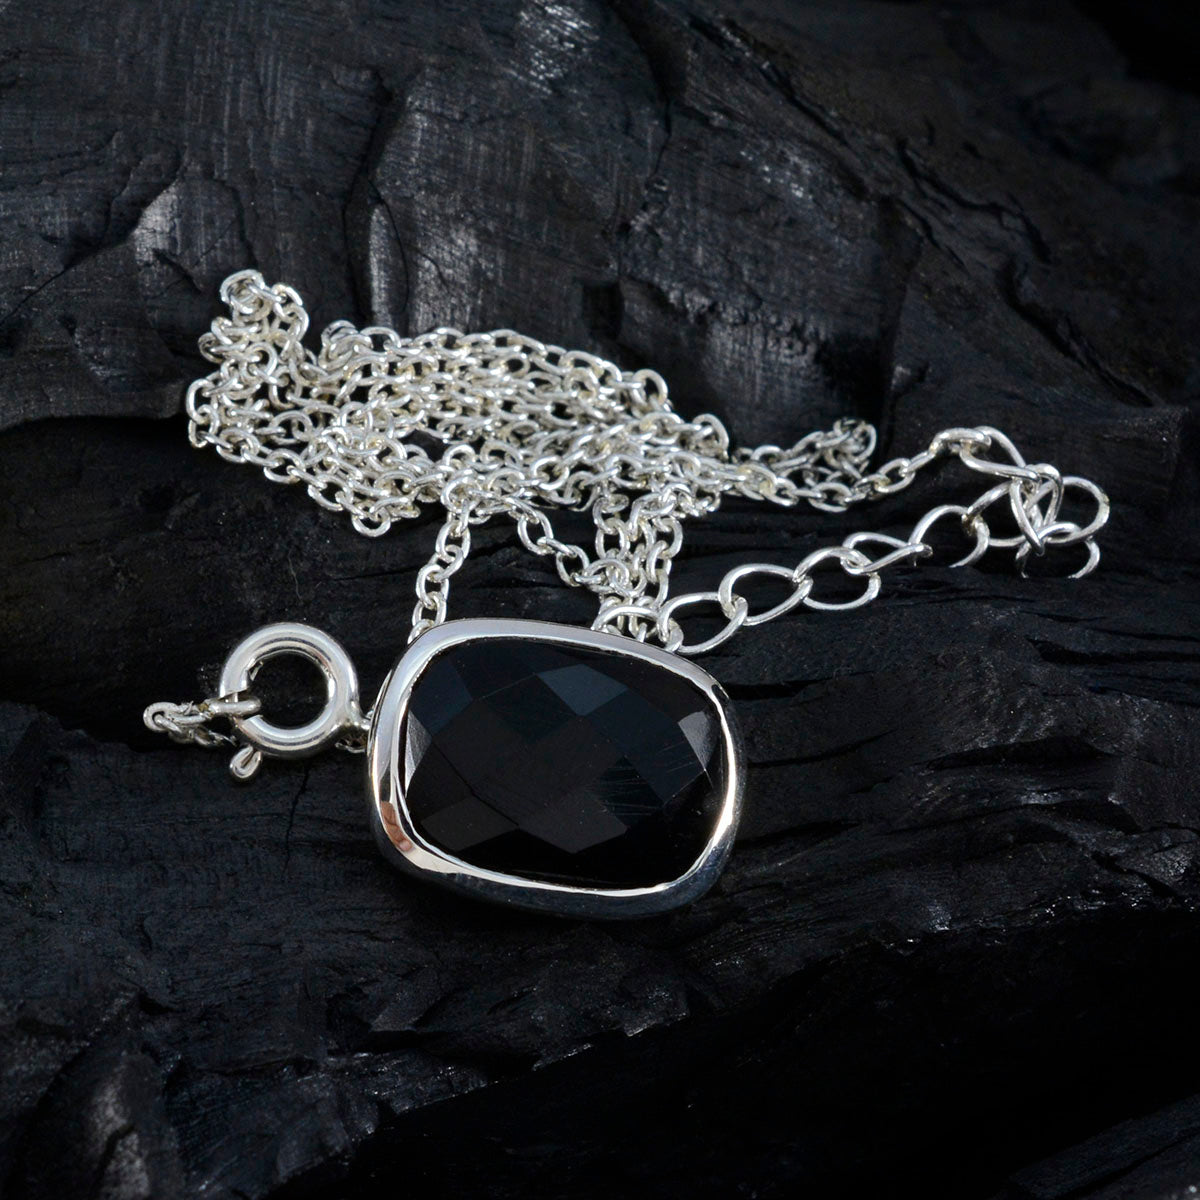 Riyo belles pierres précieuses octogone damier noir onyx noir pendentif en argent massif cadeau pour anniversaire